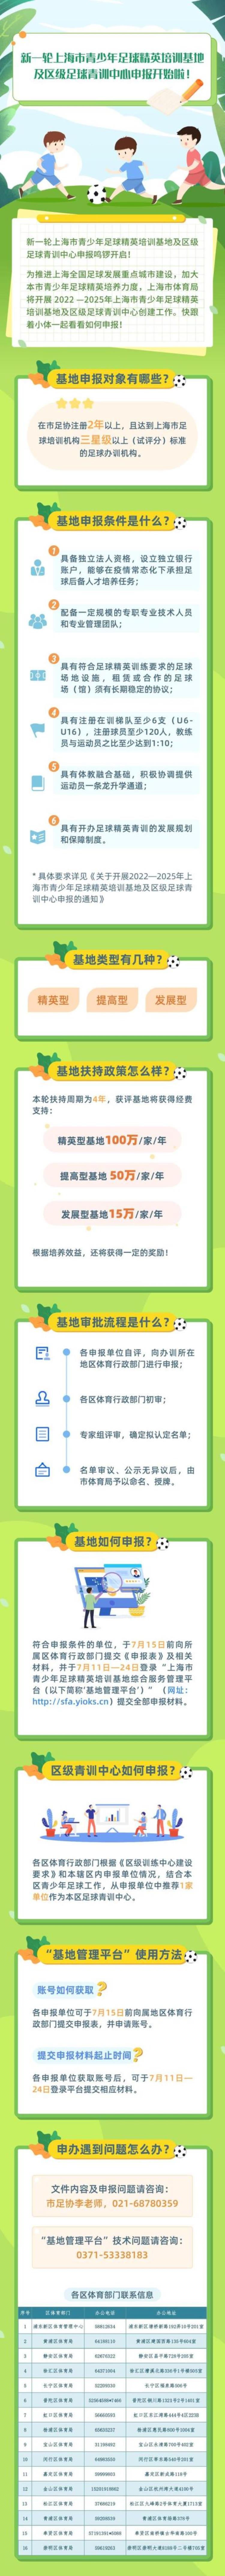 最高4年400万元经费支持申报上海青少年足球精英培训基地大有学问